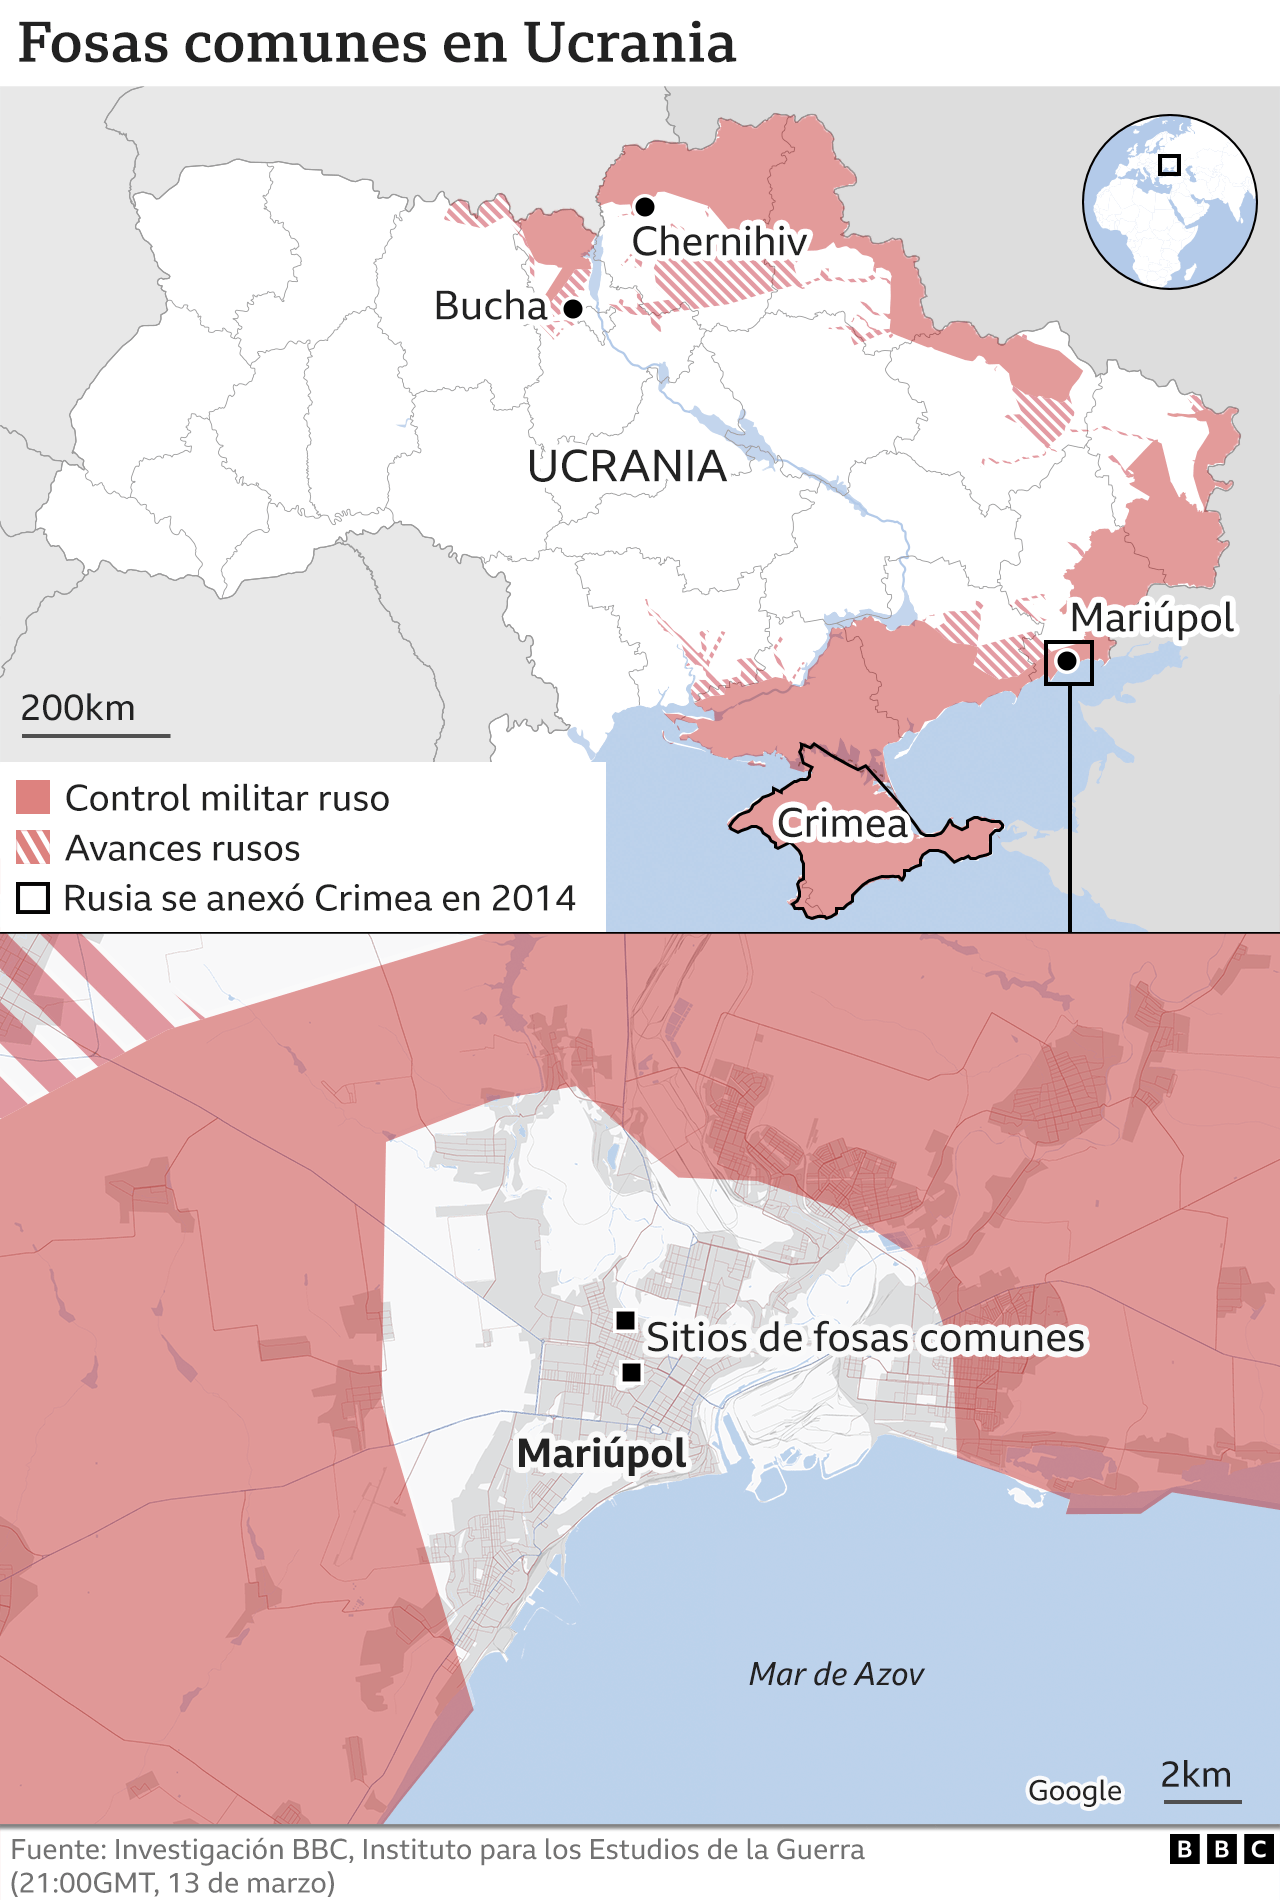 Mapa que muestra los sitios de las fosas comunes en Ucrania